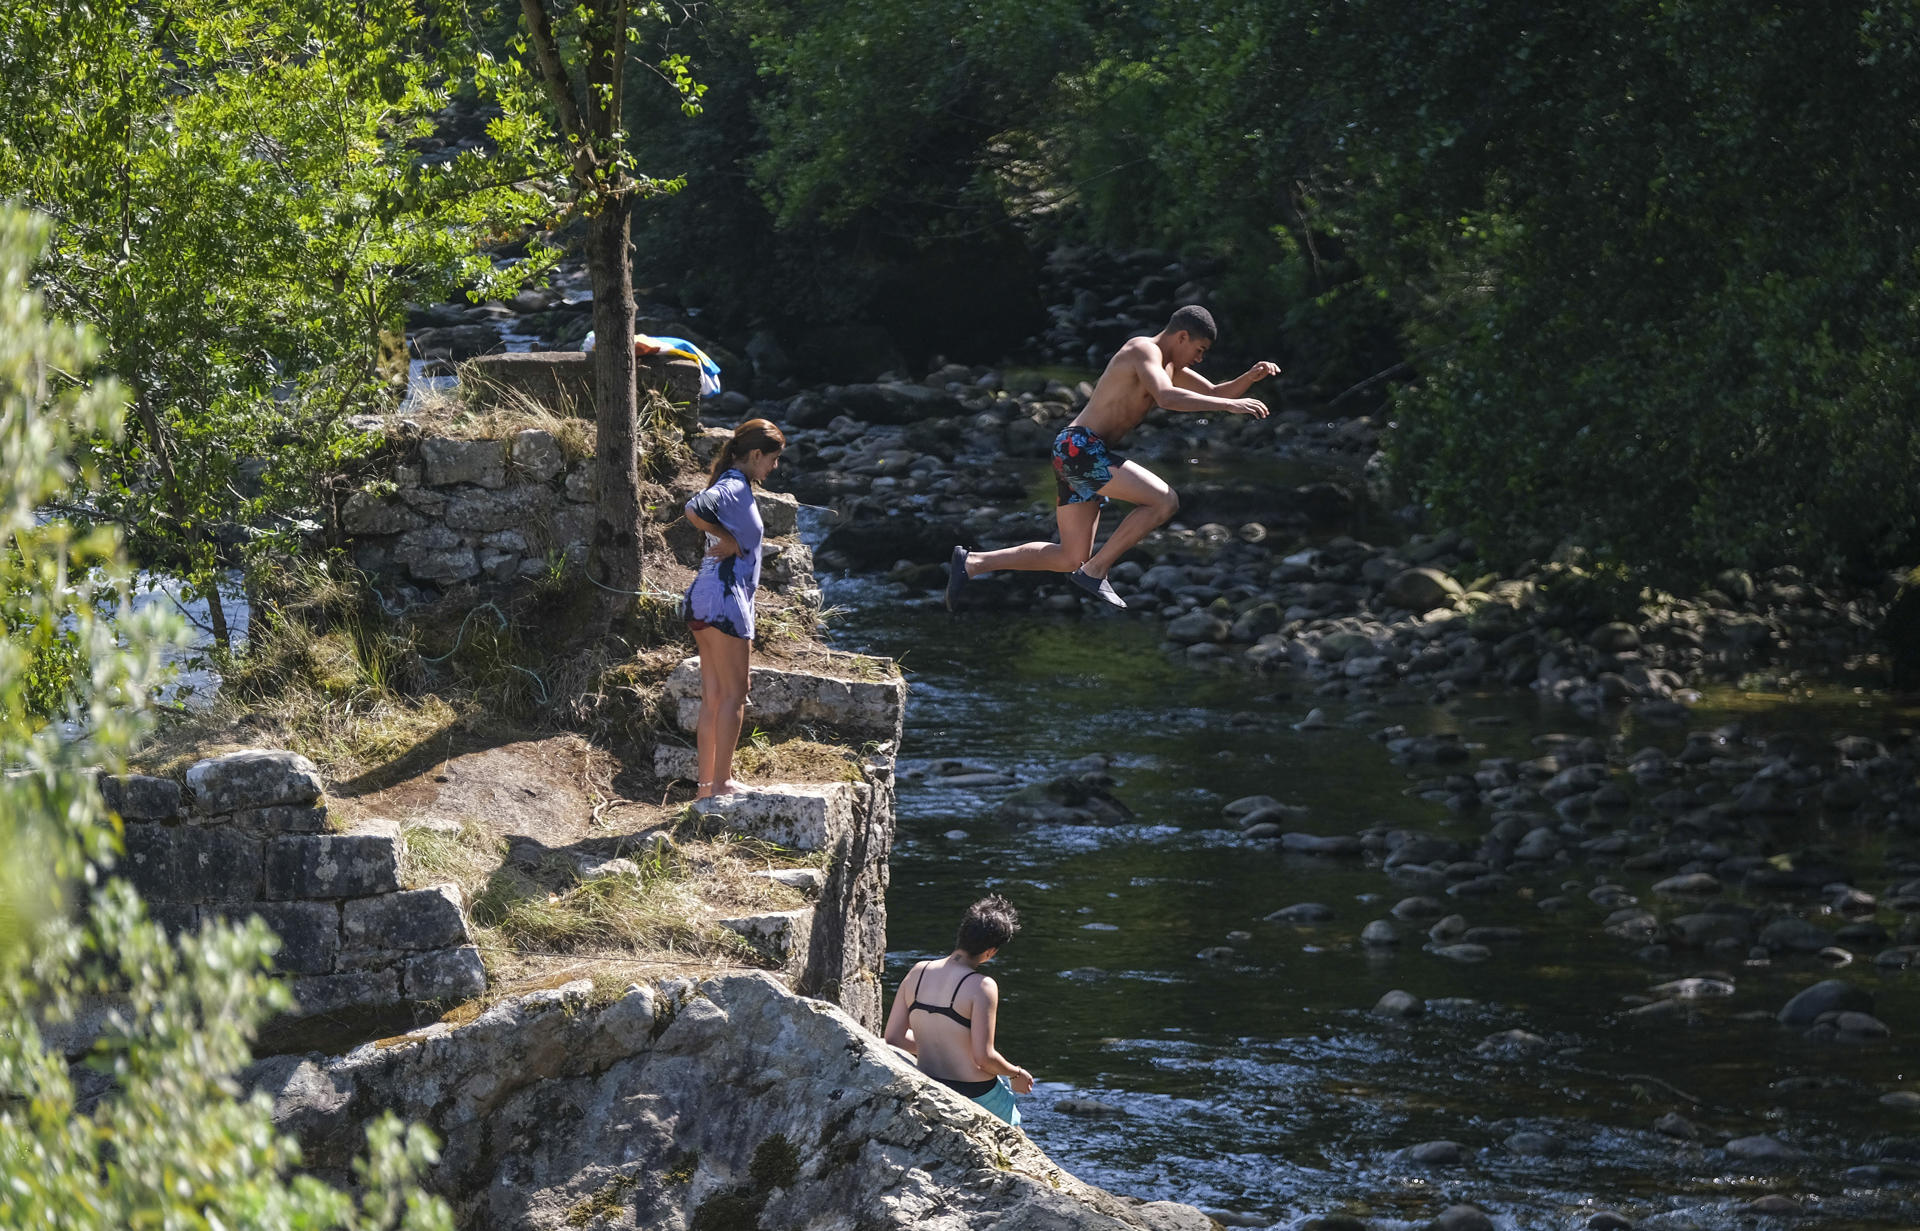 Bañistas refrescándose en el agua esta tarde en el río TrubiaEFE/Paco Paredes